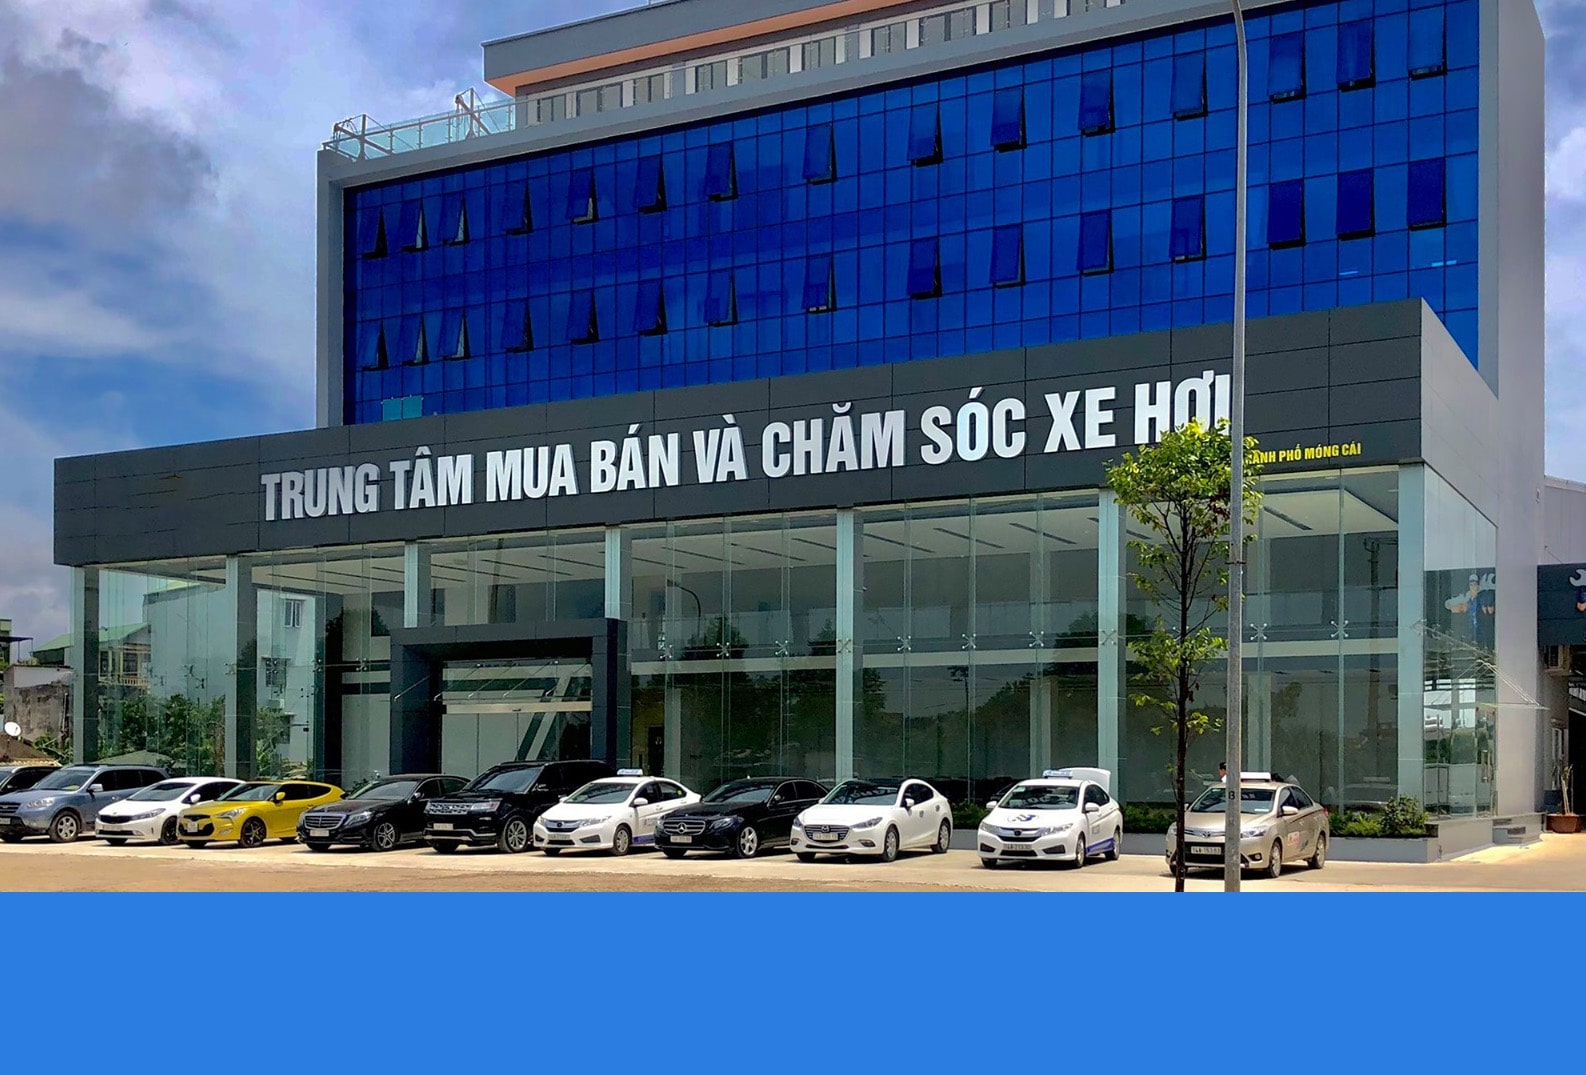 Mẫu vách mặt dựng mà Minh An đã lắp đặt cho trung tâm mua bán ô tô Móng Cái